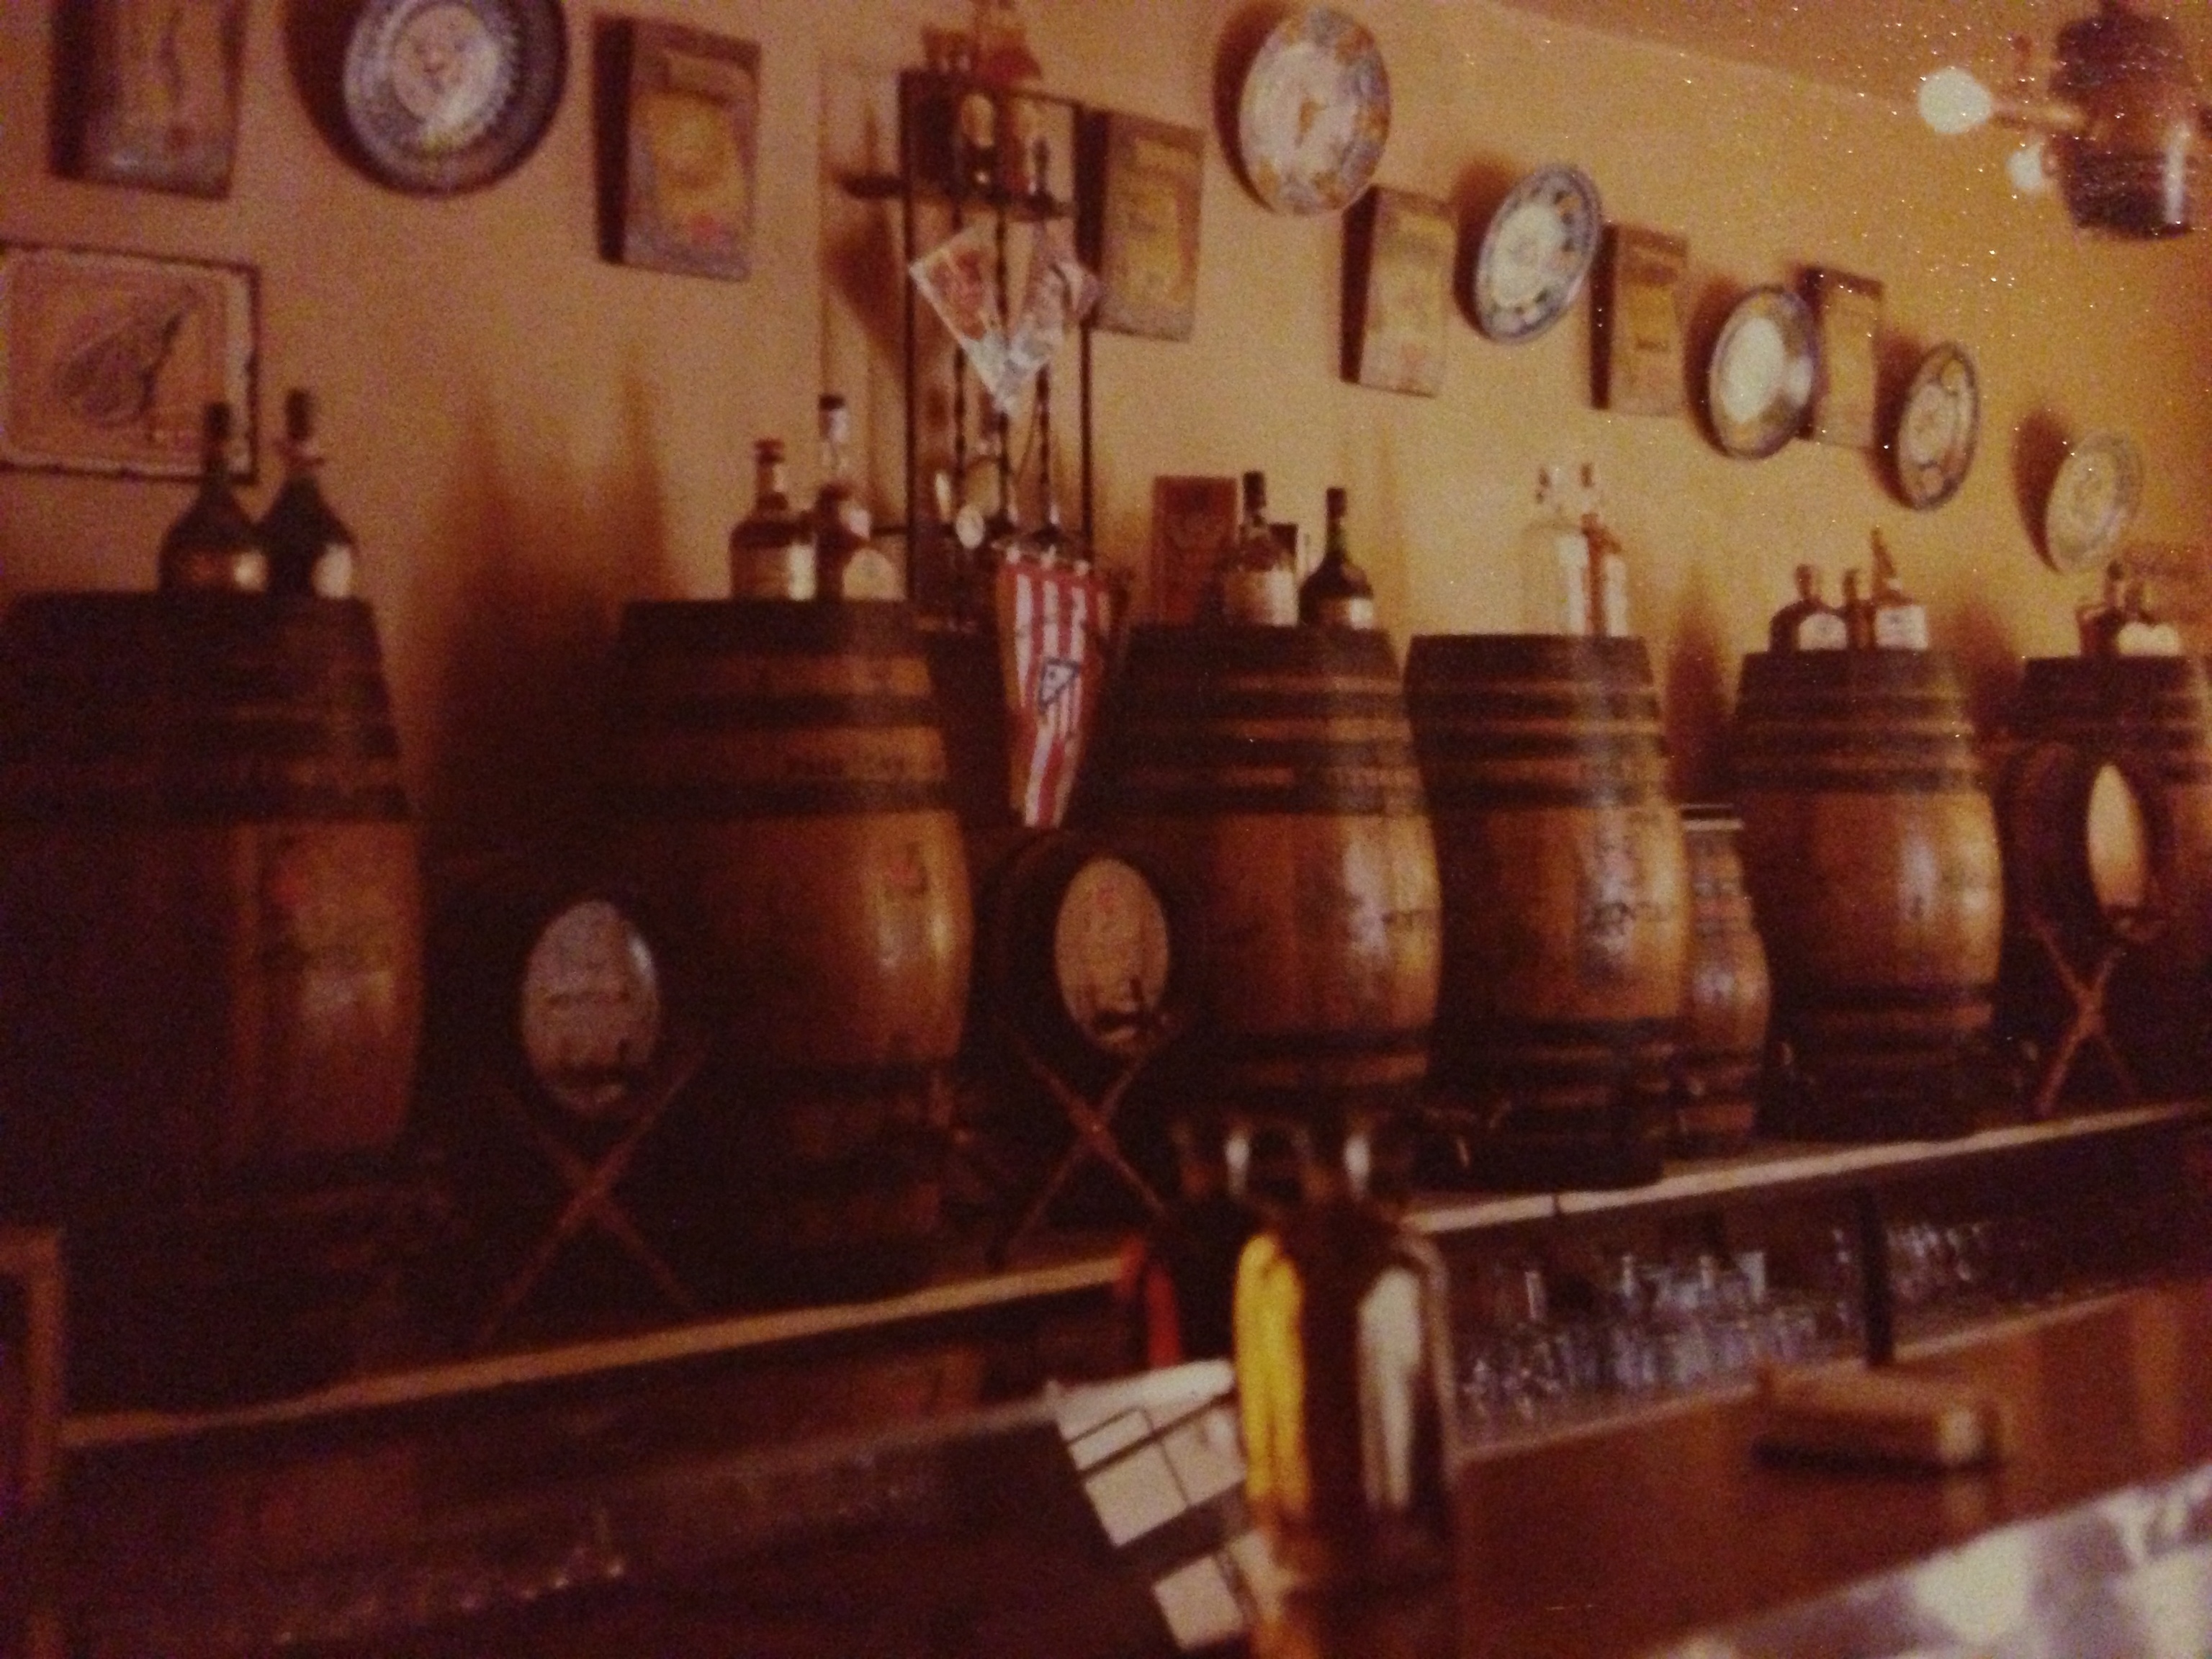 Los barriles de vino de Montilla Moriles que se vendian antes de ser un restaurante.